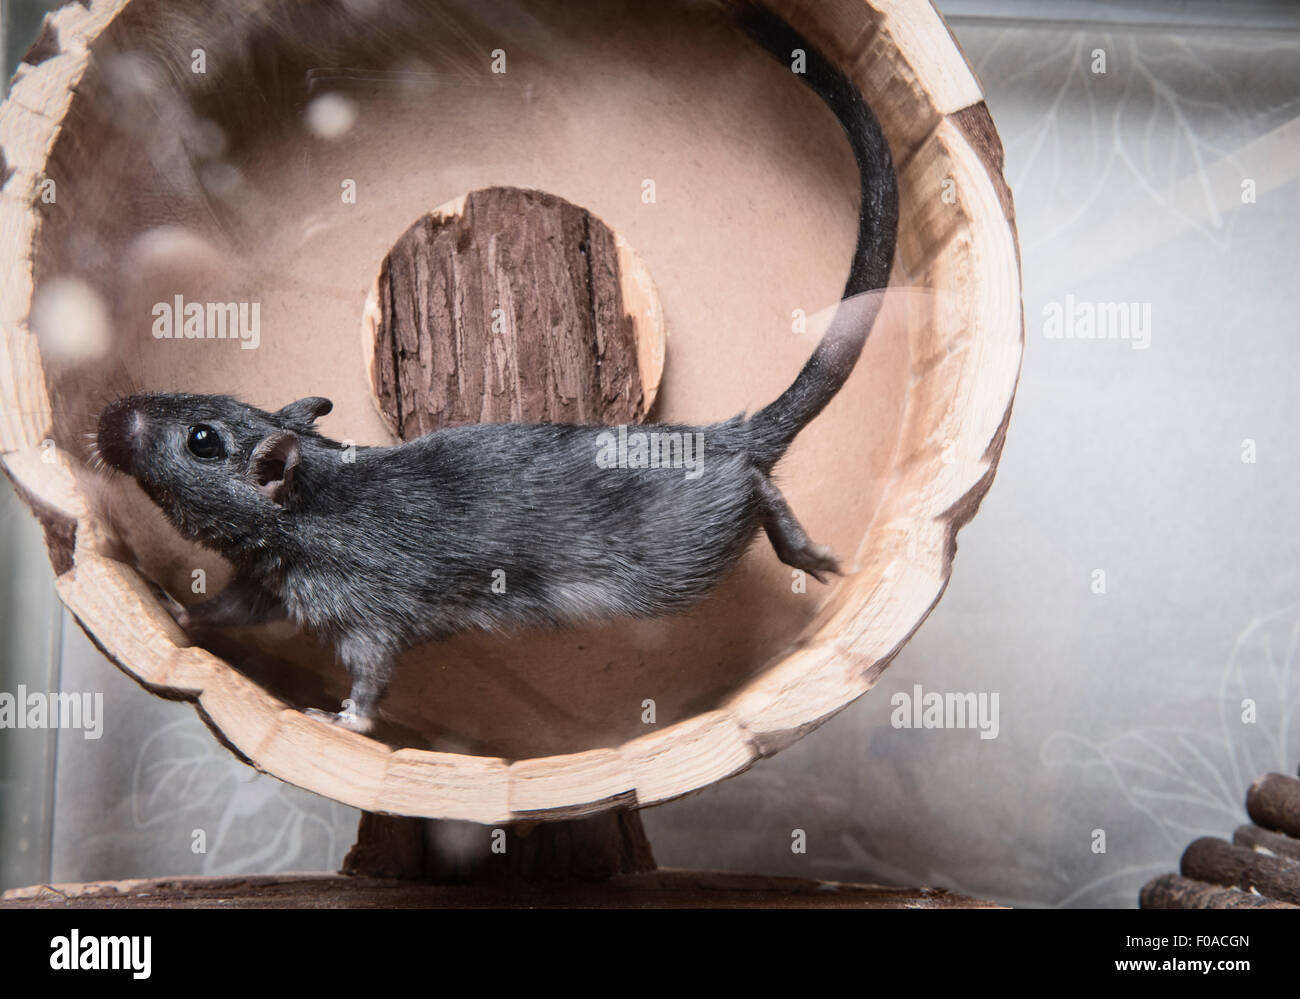 Gerbil running on wooden wheel Stock Photo